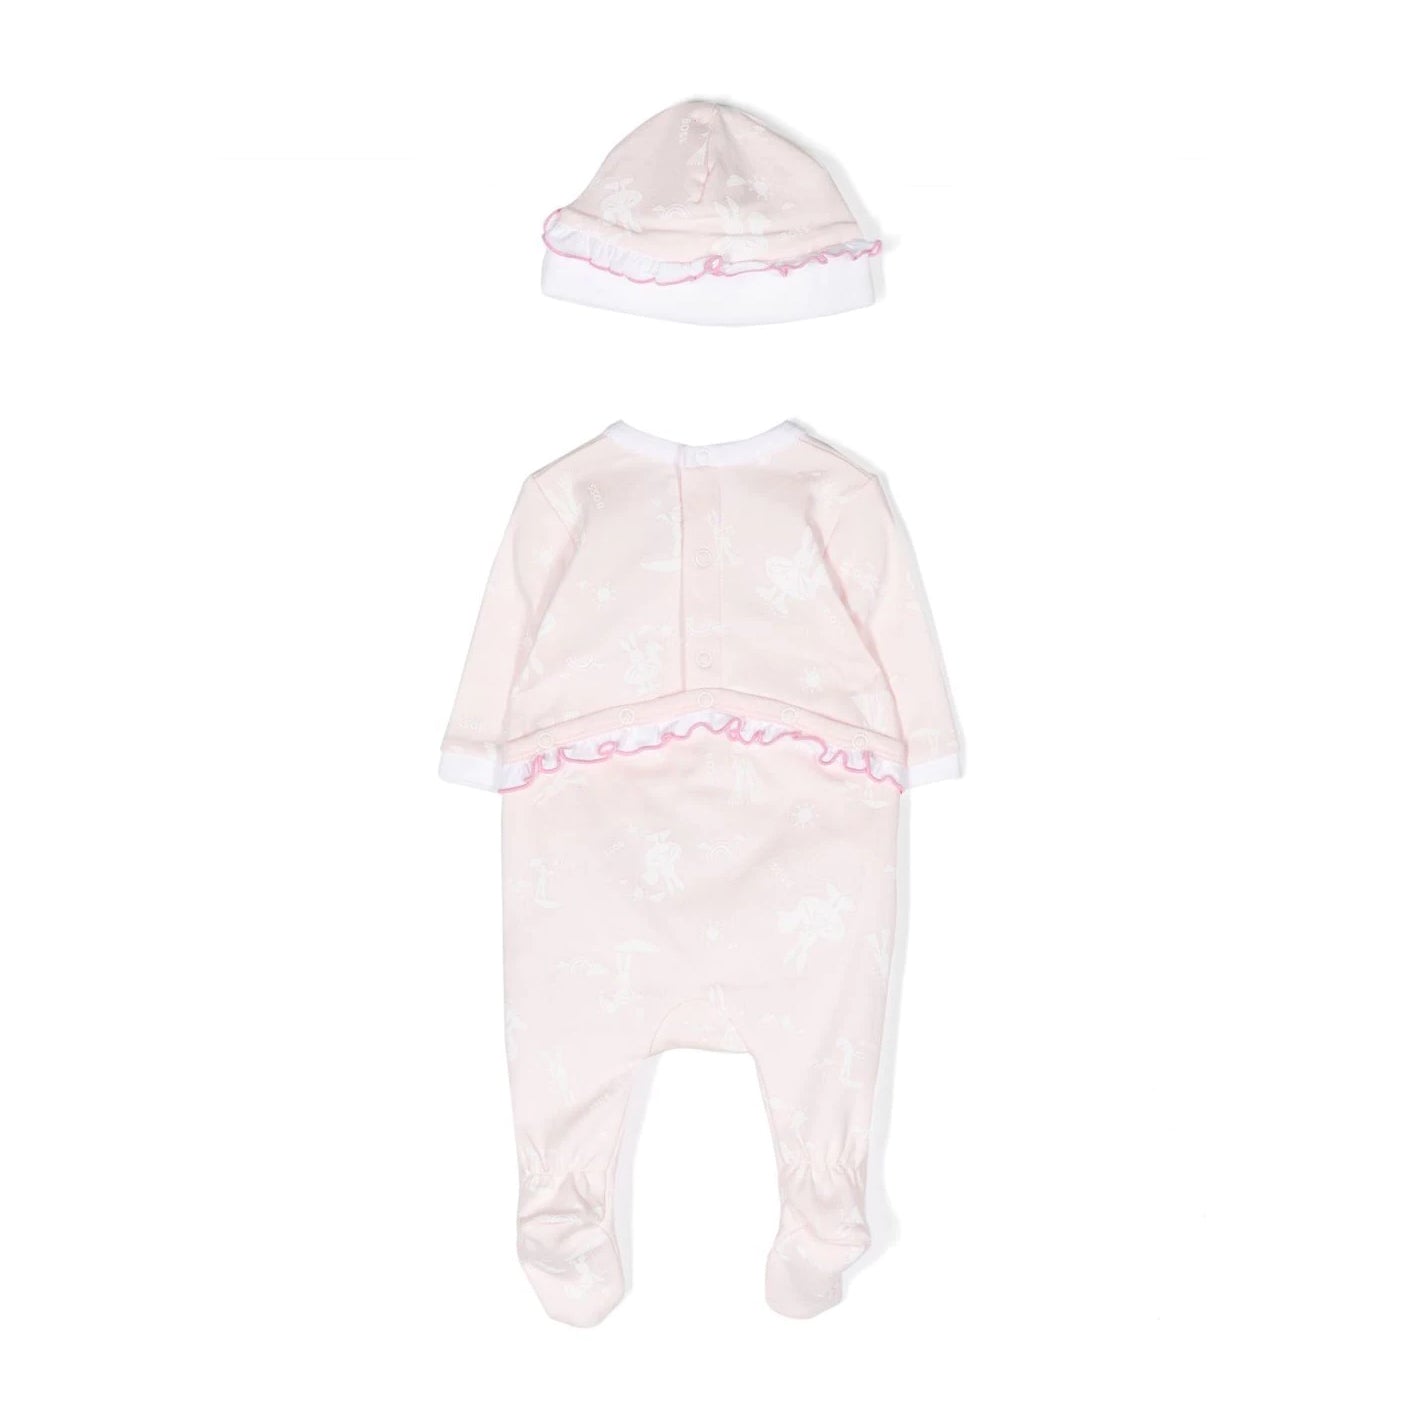 Baby Girls Pink Cotton Babysuit Set